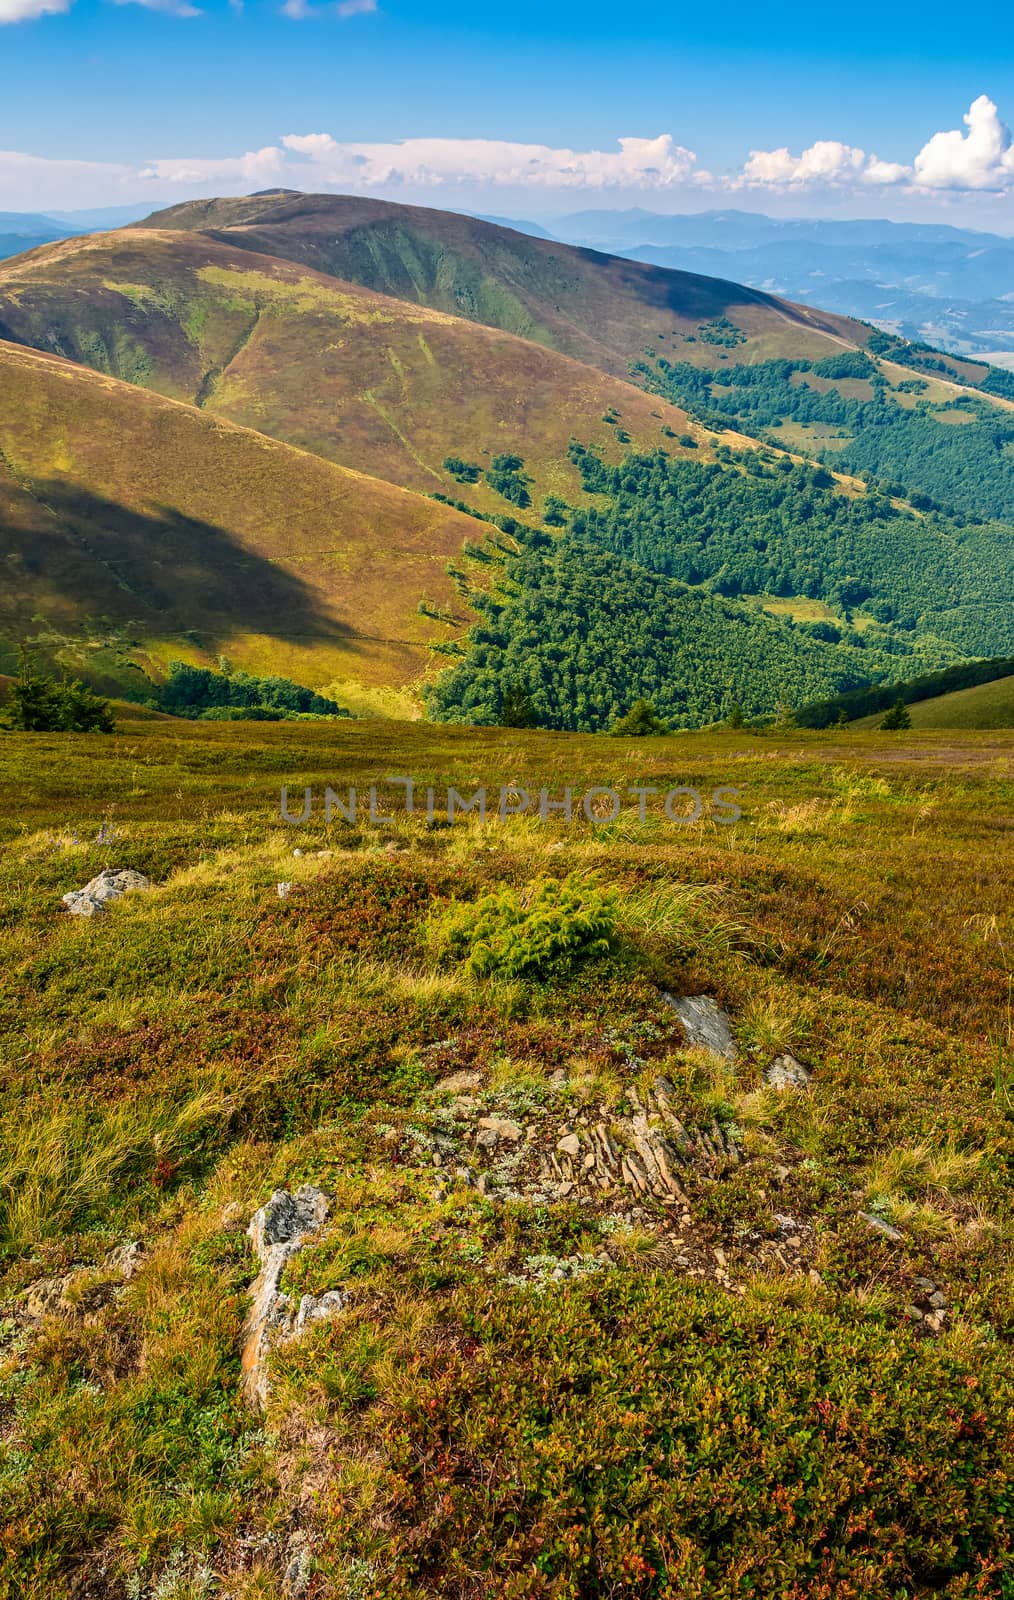 Carpathian Mountain Range in late summer by Pellinni